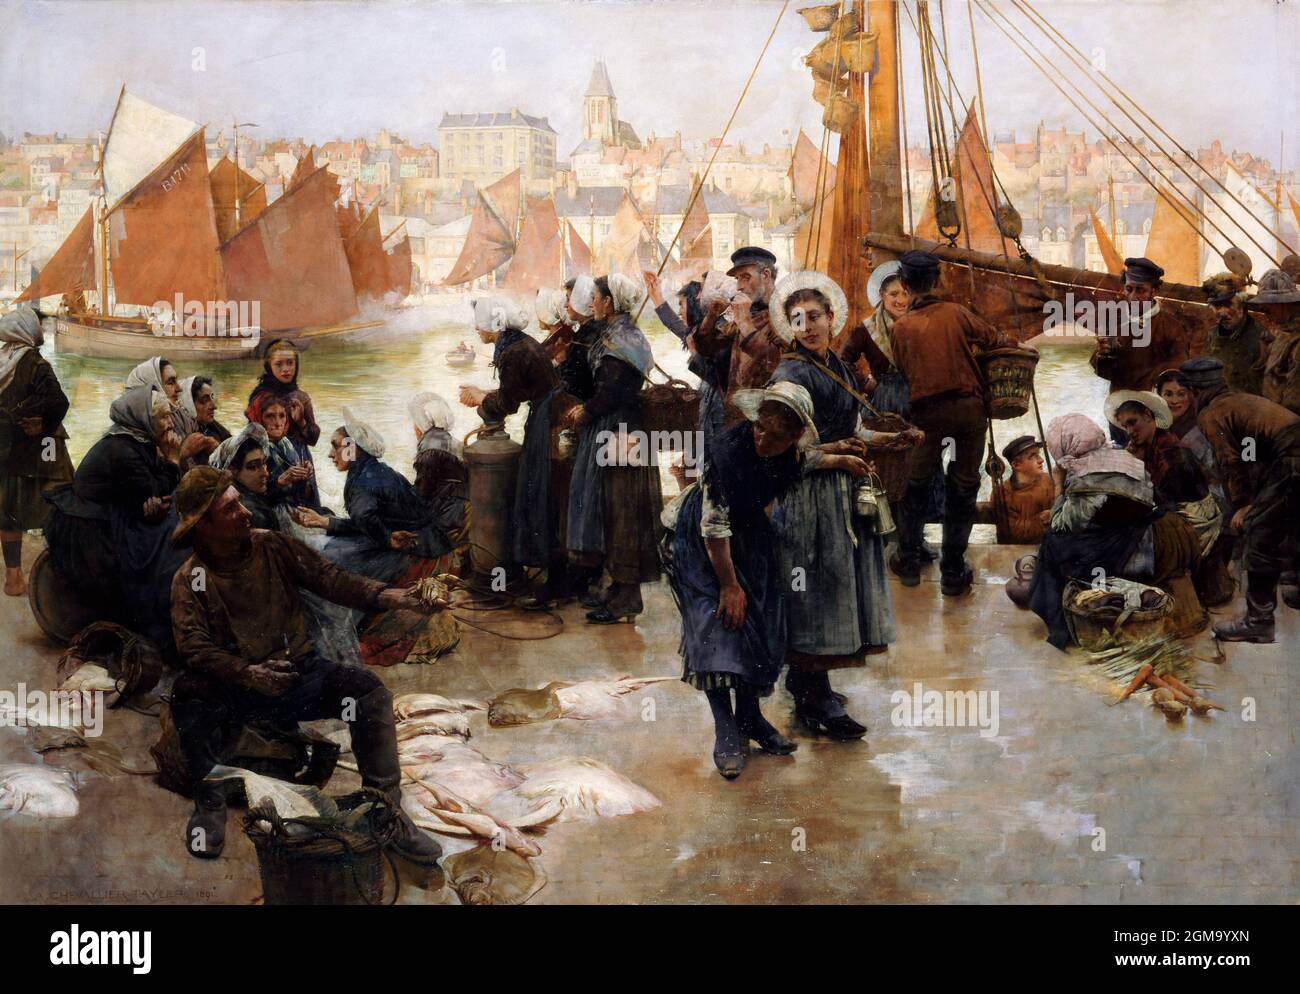 Départ de la flotte de pêche, Boulogne, par Albert Chevallier Tayler (1862-1925), huile sur toile, 1891 Banque D'Images